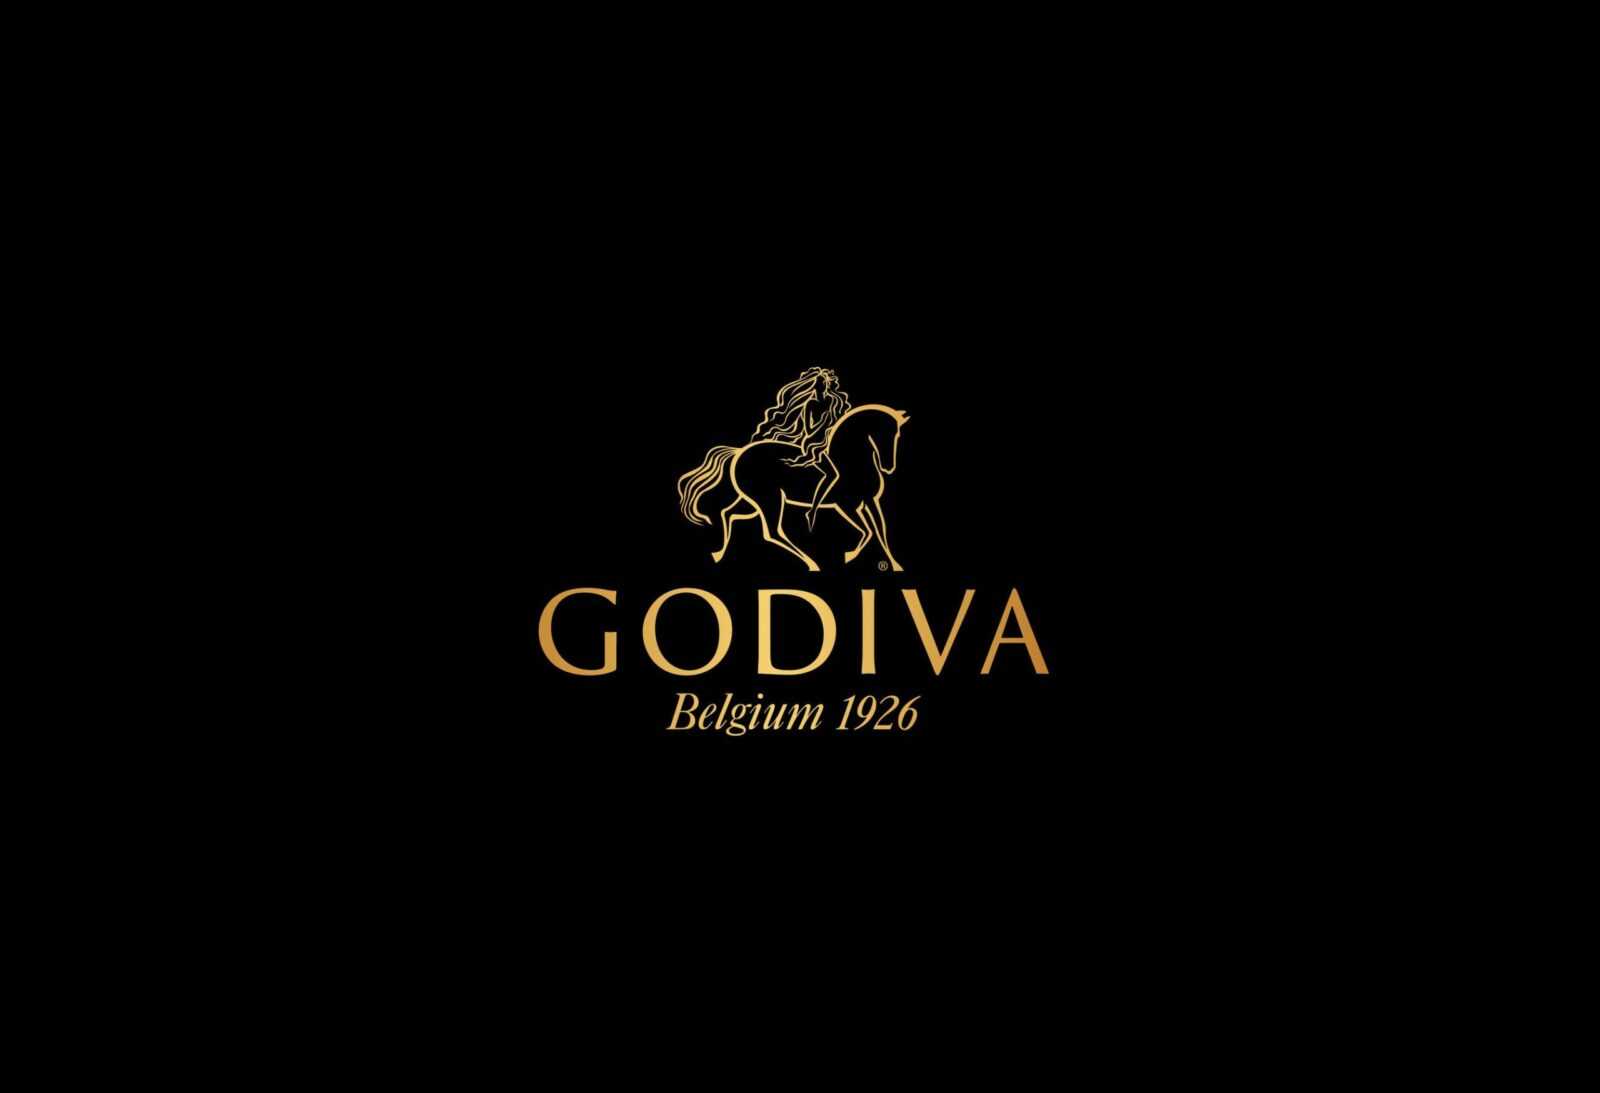 Godiva campaign